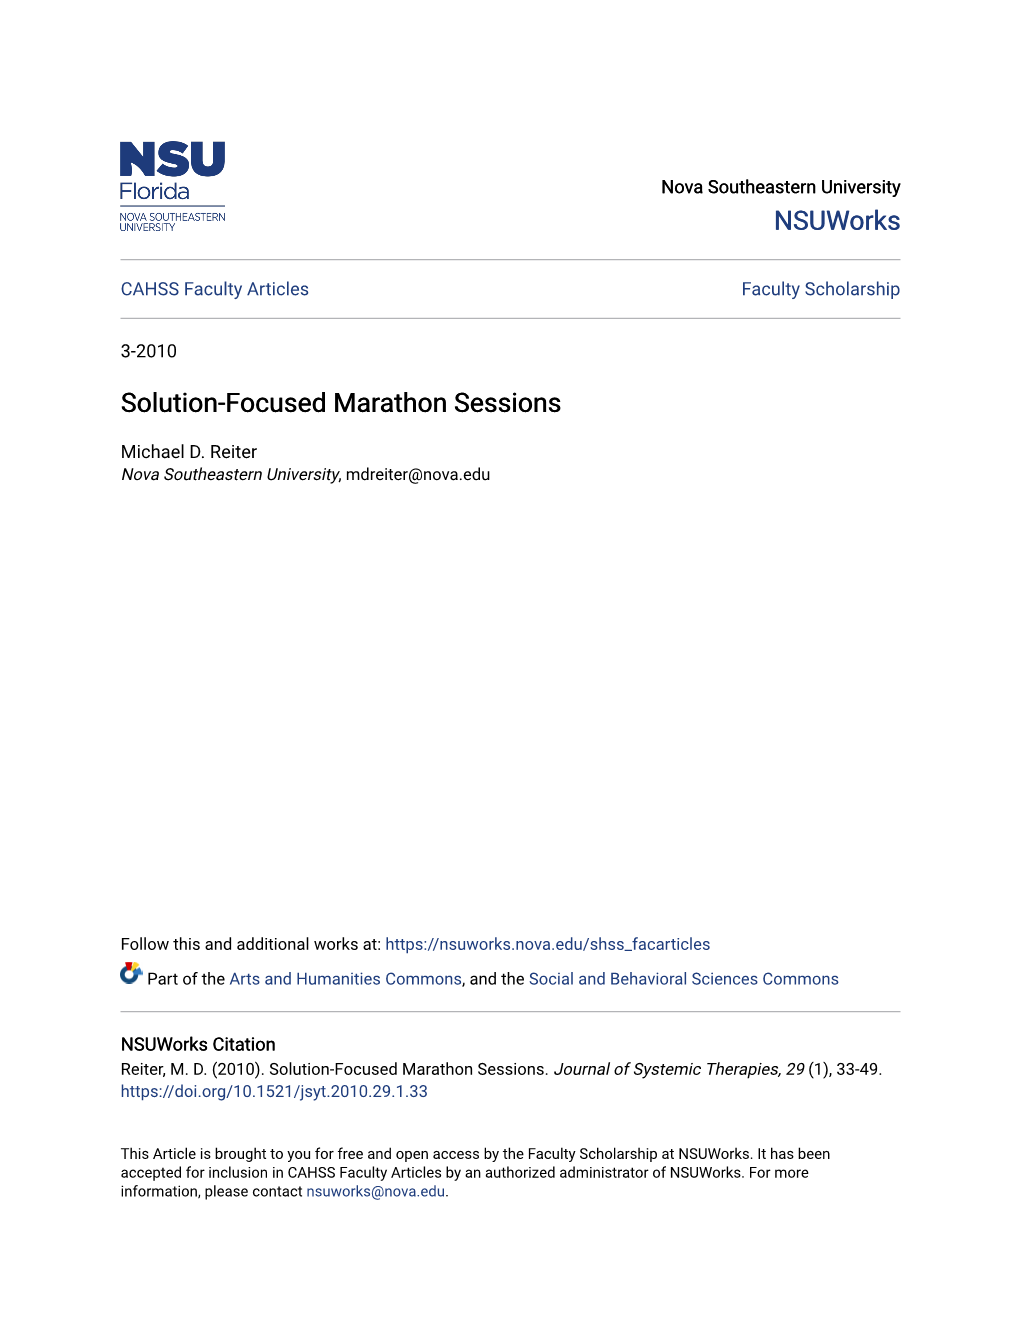 Solution-Focused Marathon Sessions